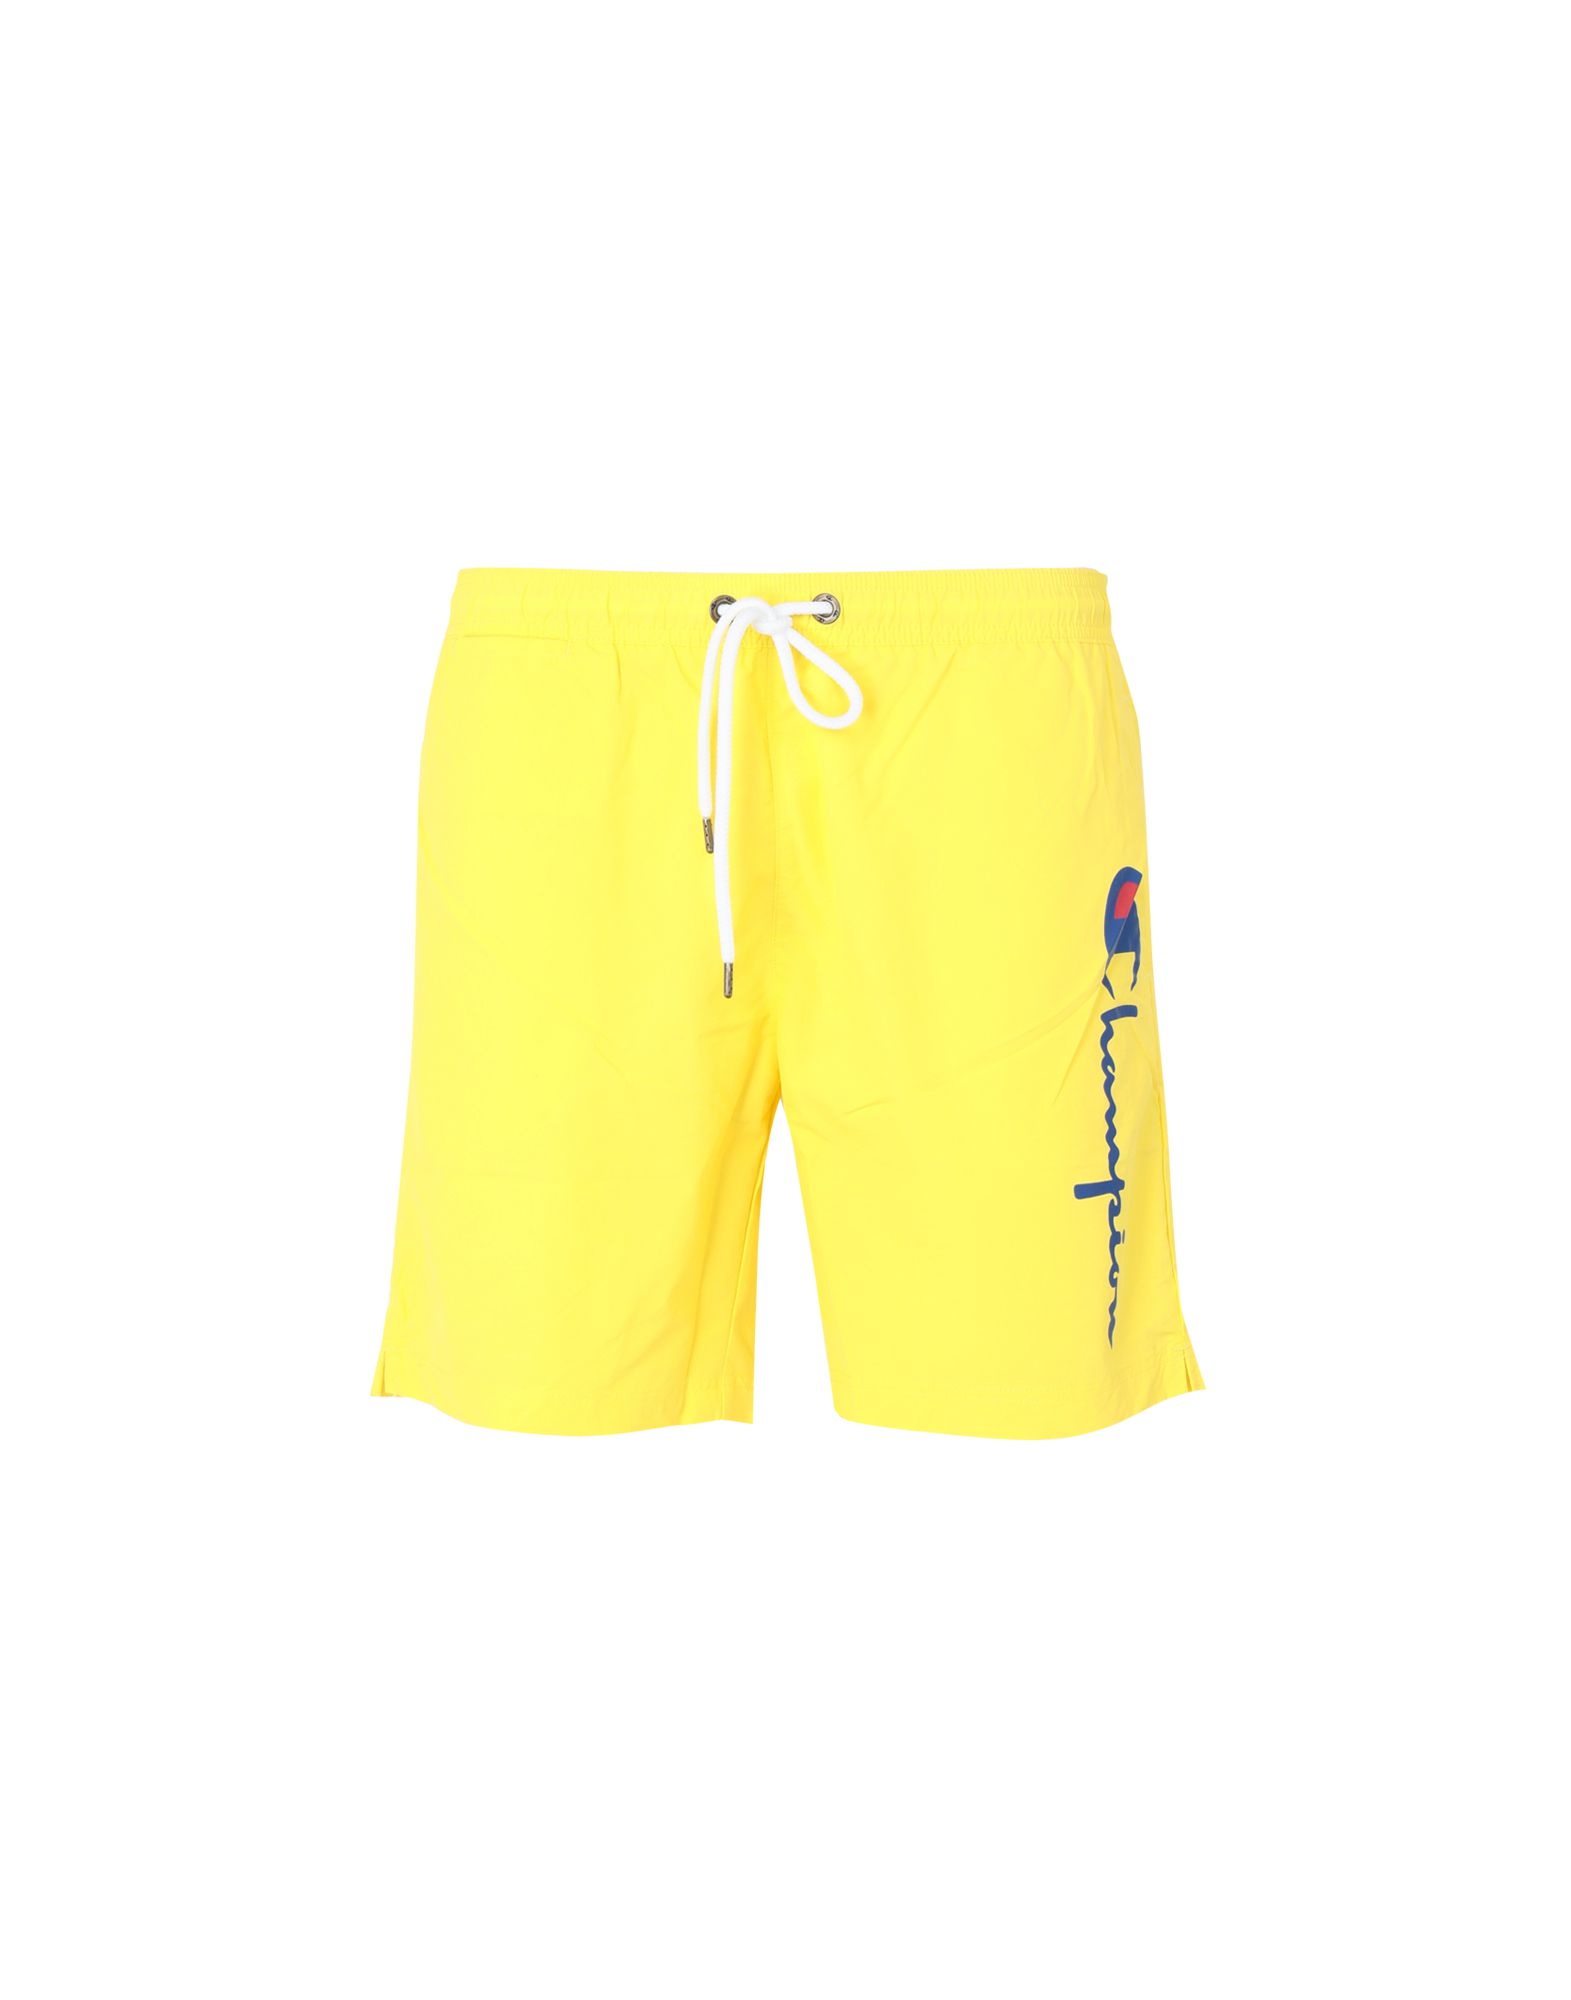 yellow champion shorts